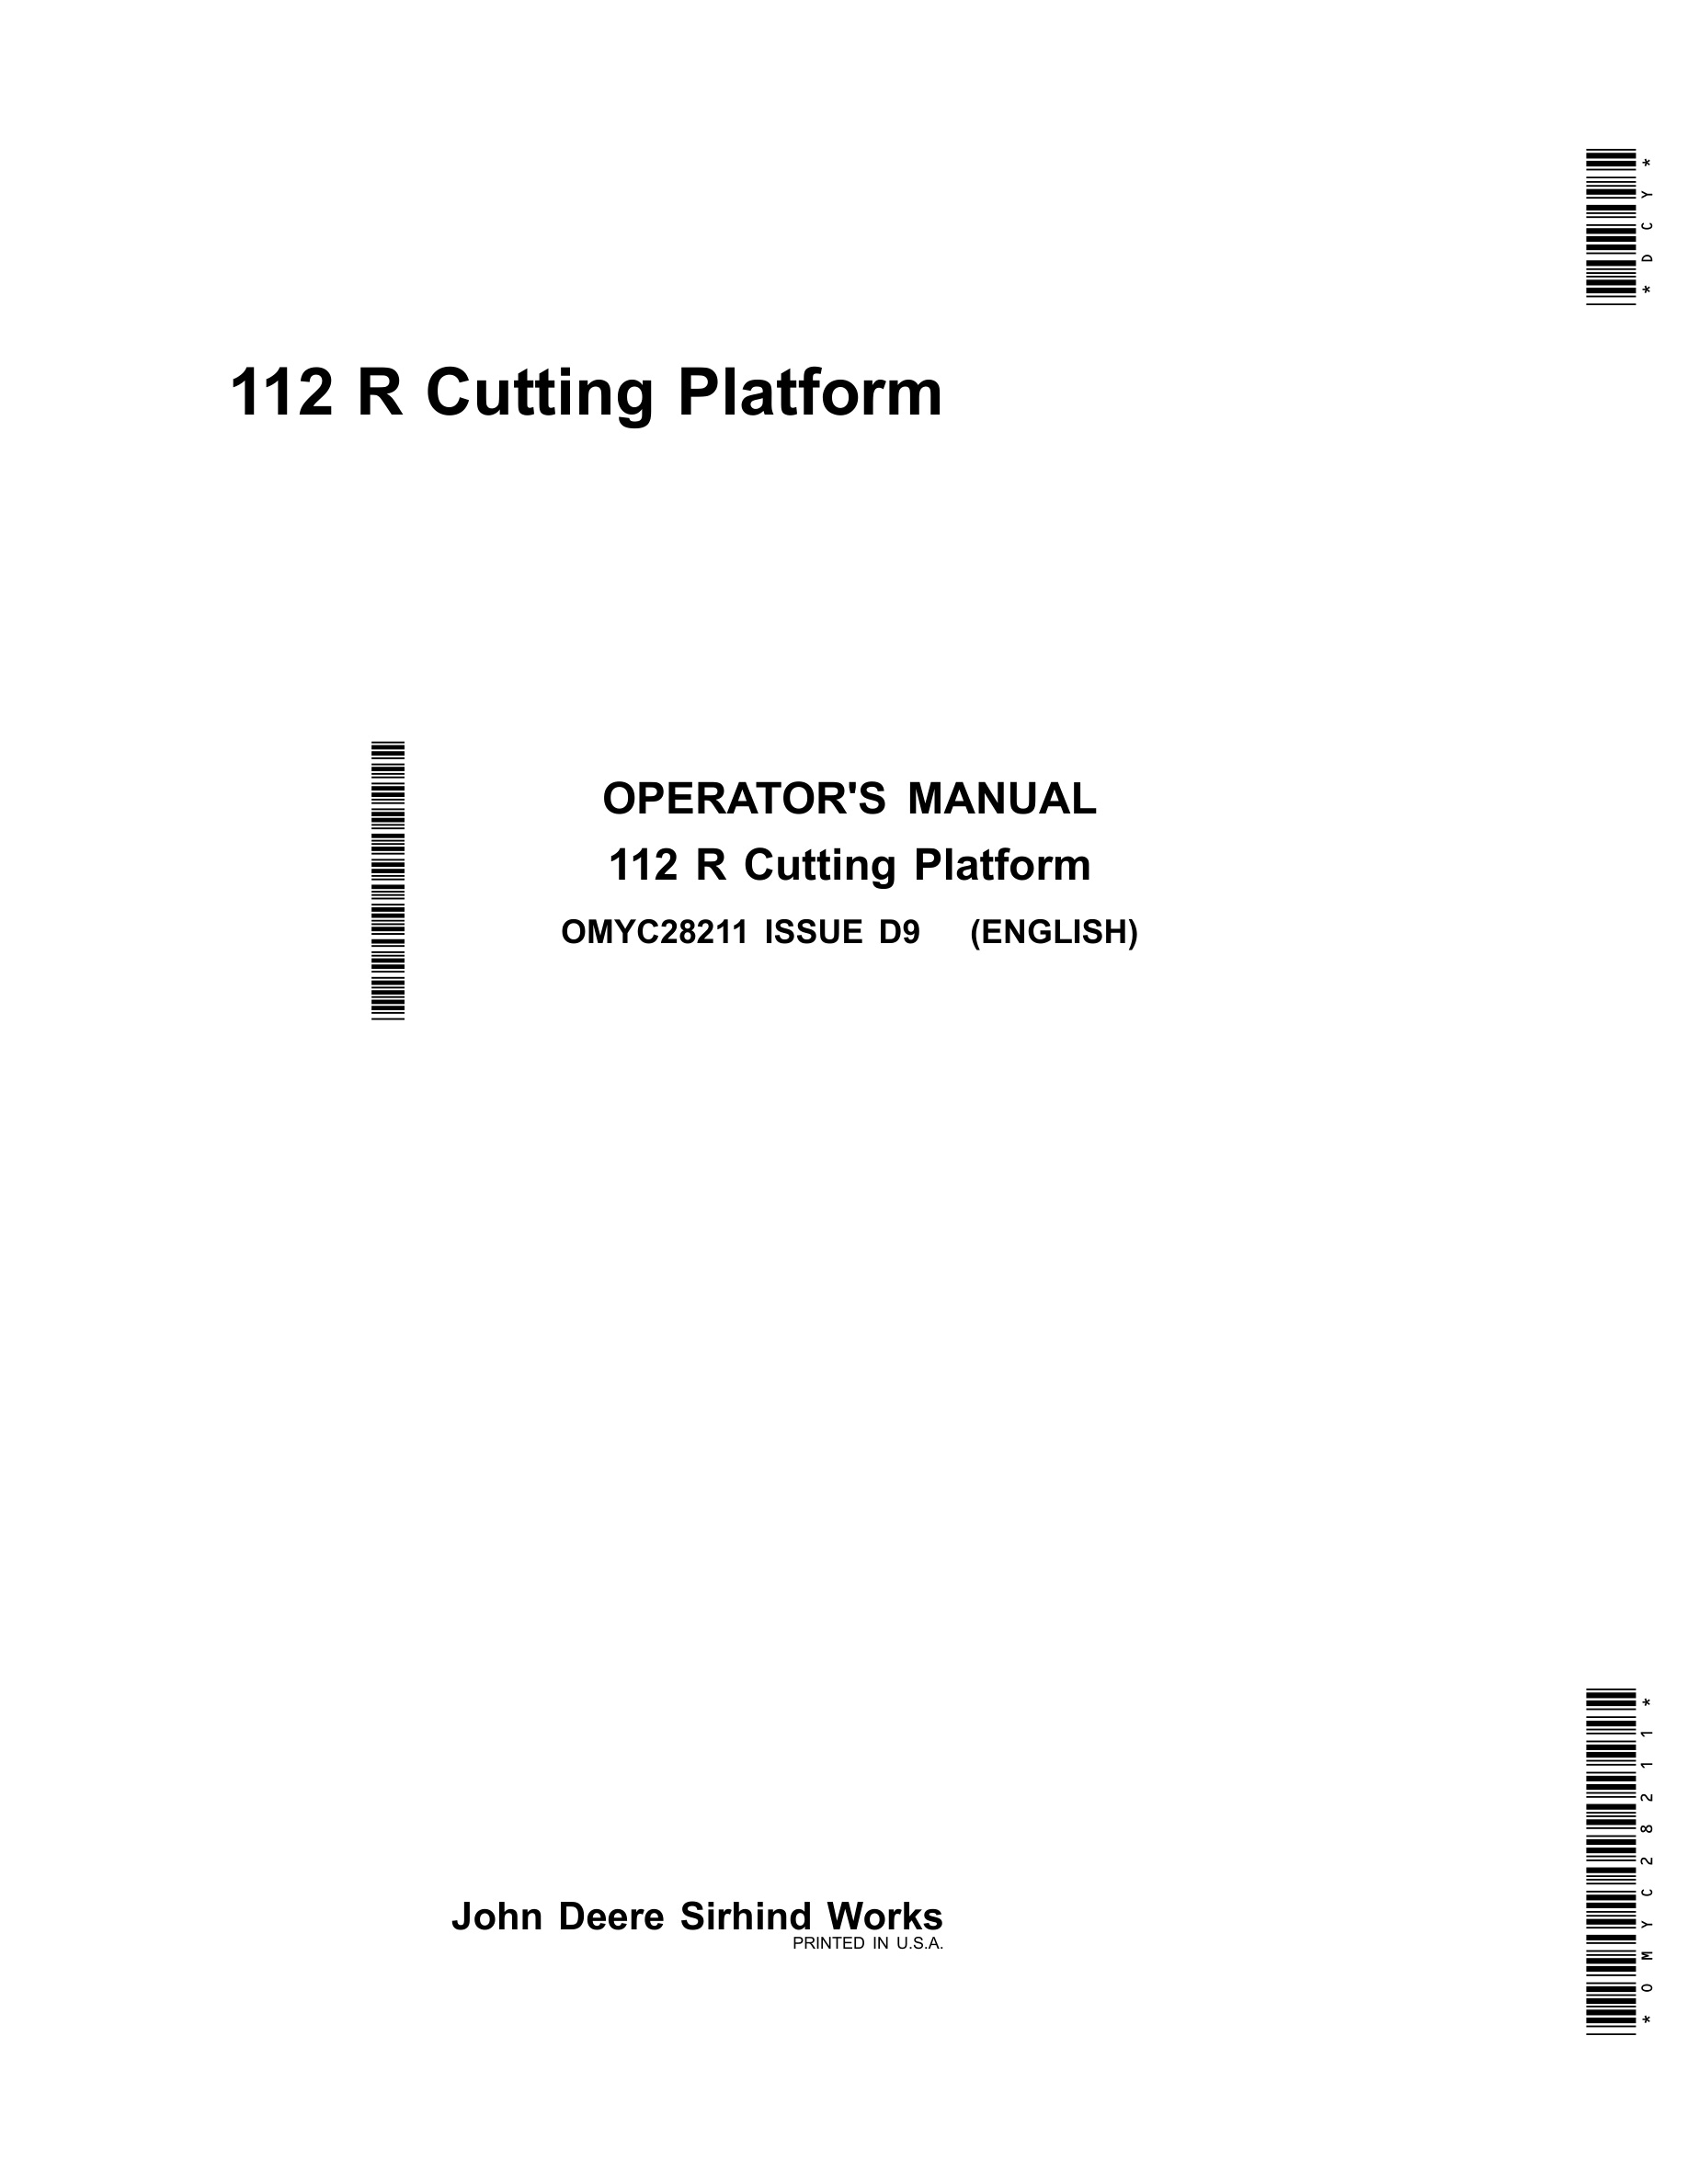 John Deere 112 R Cutting Platforms Operator Manual OMYC28211-1